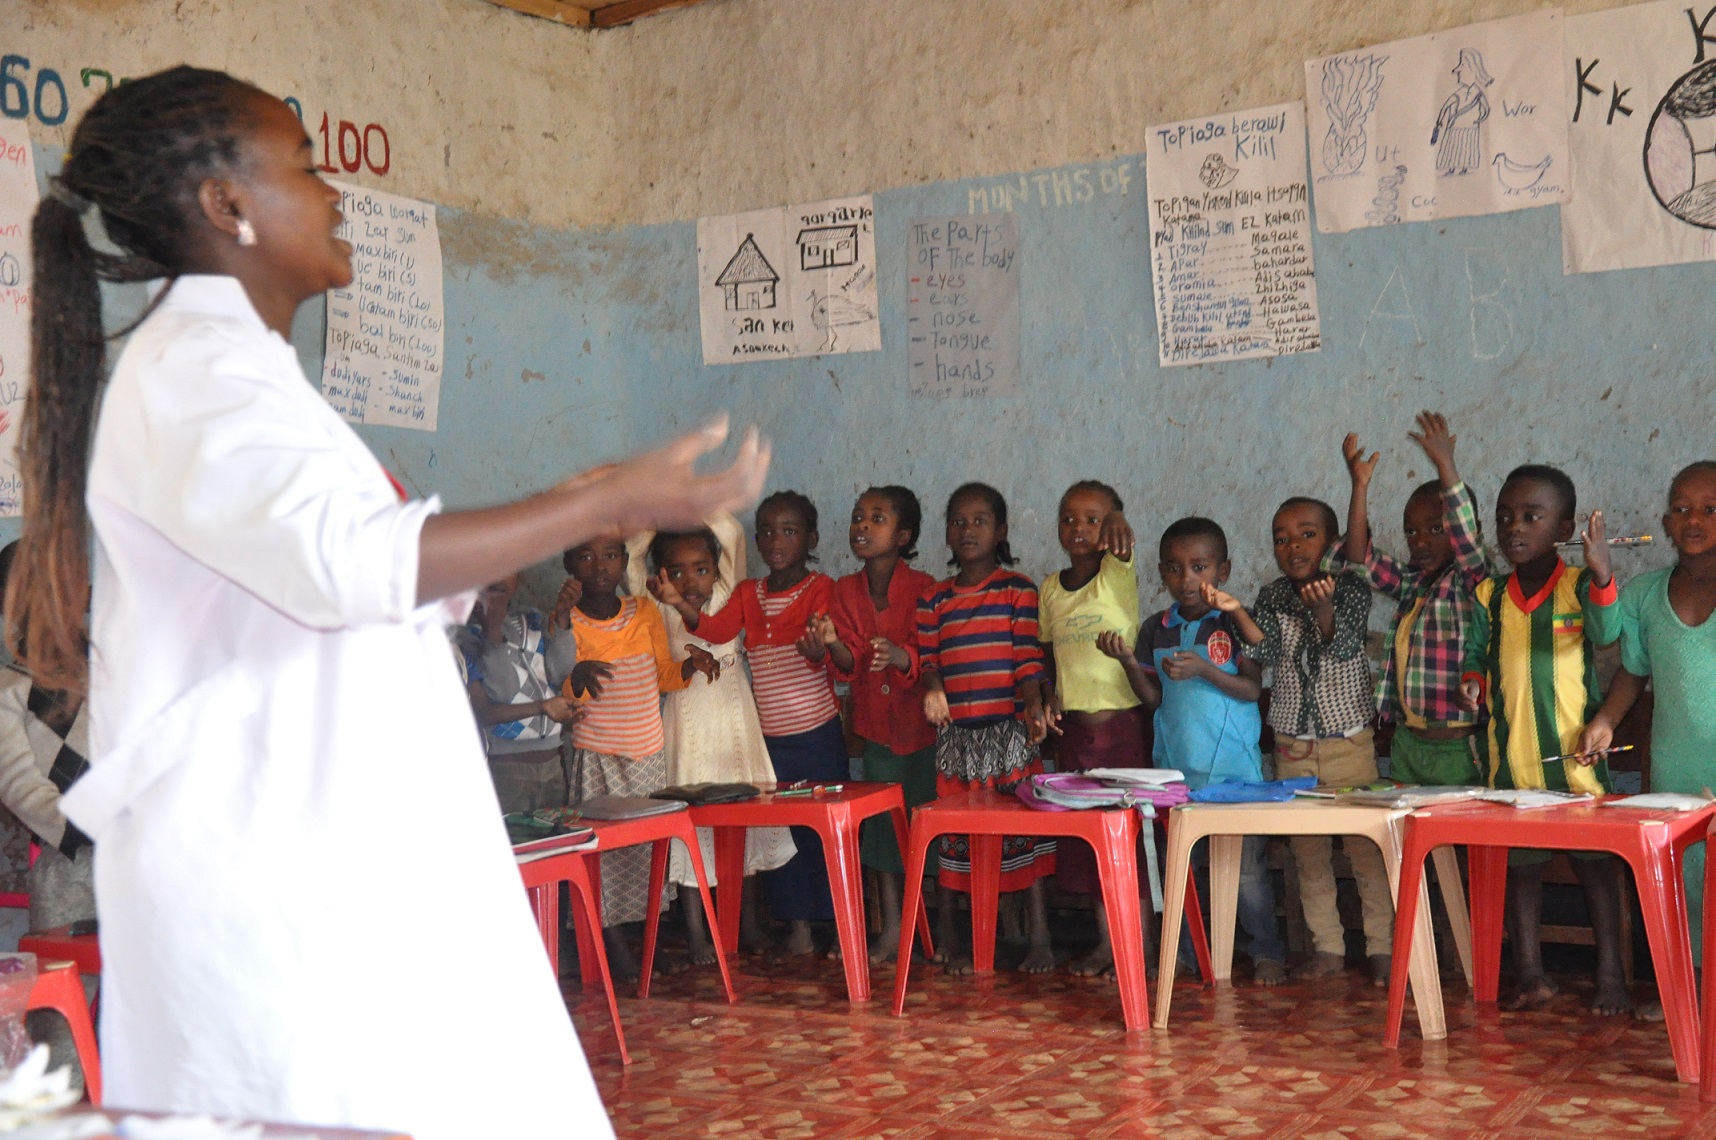 Opettaja ja alakouluikäisiä lapsia äidinkielisen opetuksen luokassa etiopialaisessa koulussa.